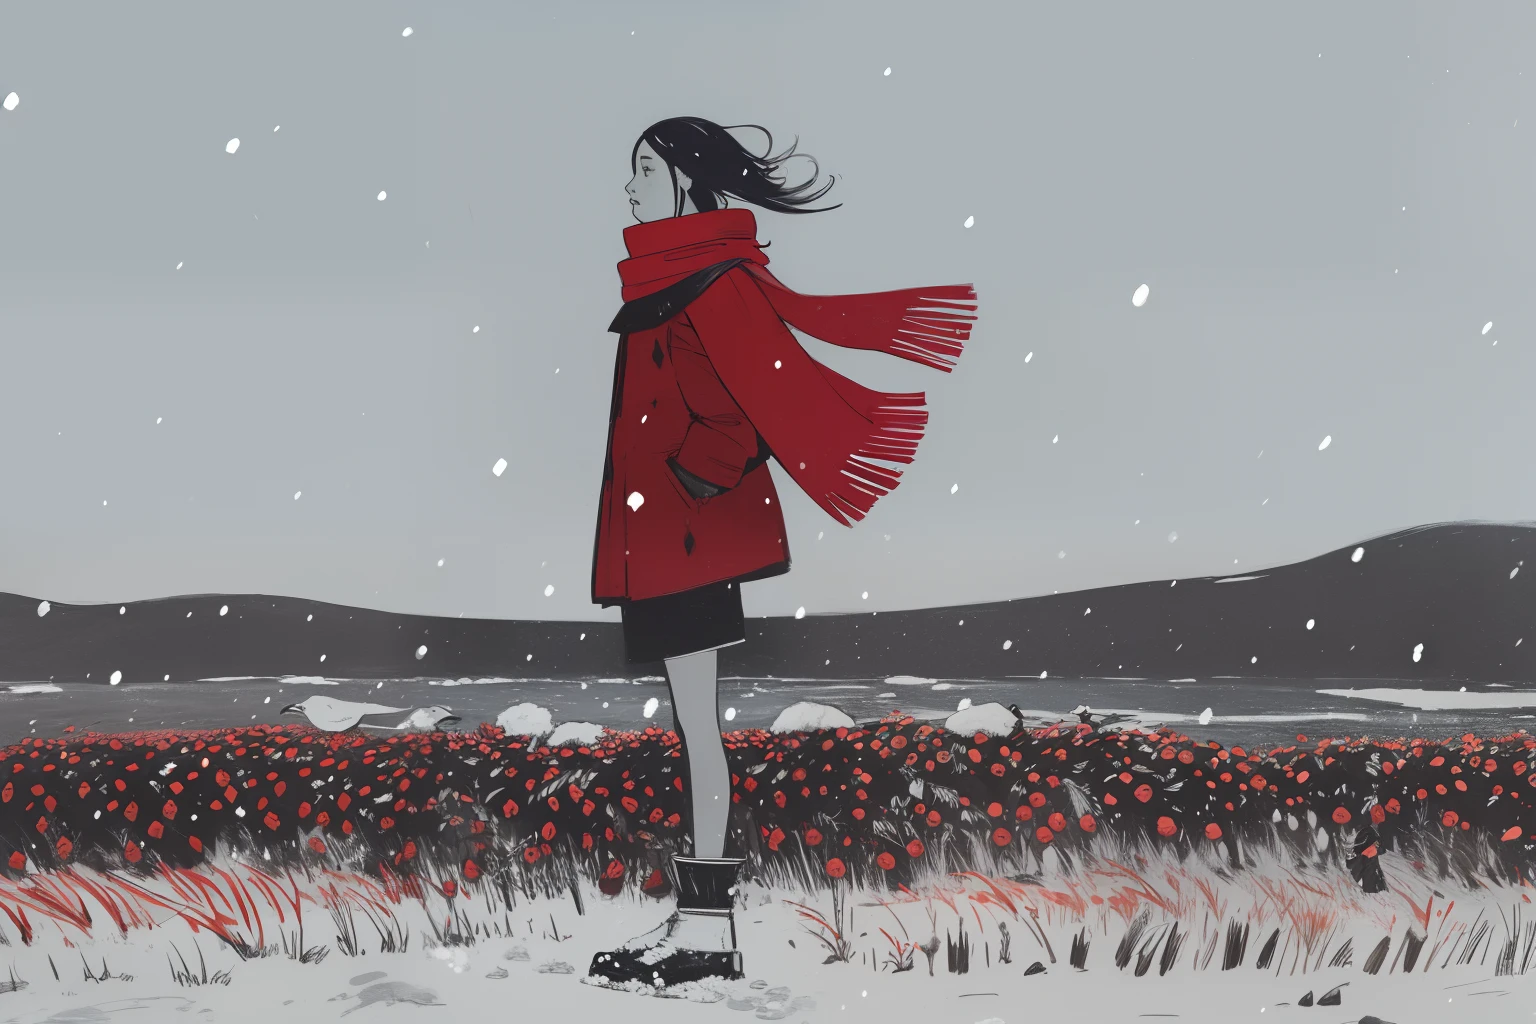 (Tribal, étnico, inuit nativo), 1 chica, red scarf on viento, De pie, invierno, tormenta de nieve, viento, Fuerte nevada, tundra, pantano, bayas rojas, gris, blanco, dark, noche, pájaros gigantes en el cielo,  bosquejo